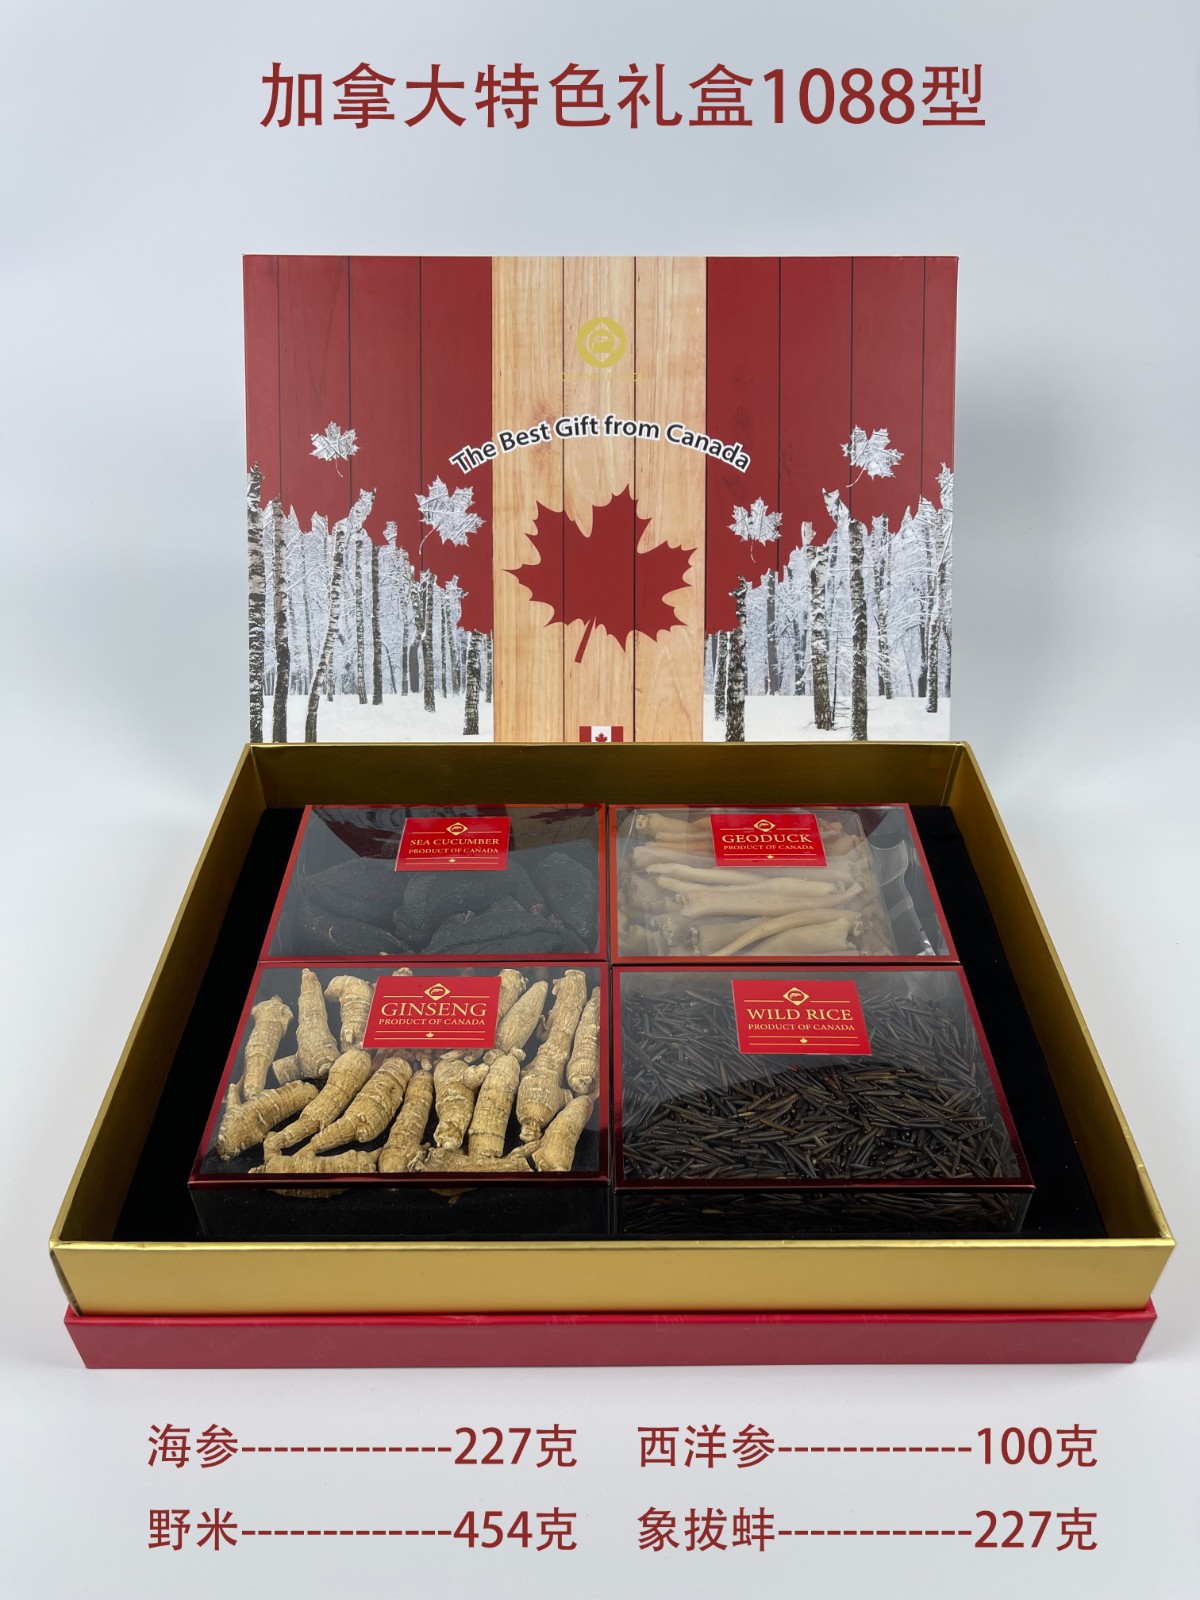 加拿大特色礼盒-1088型.jpg